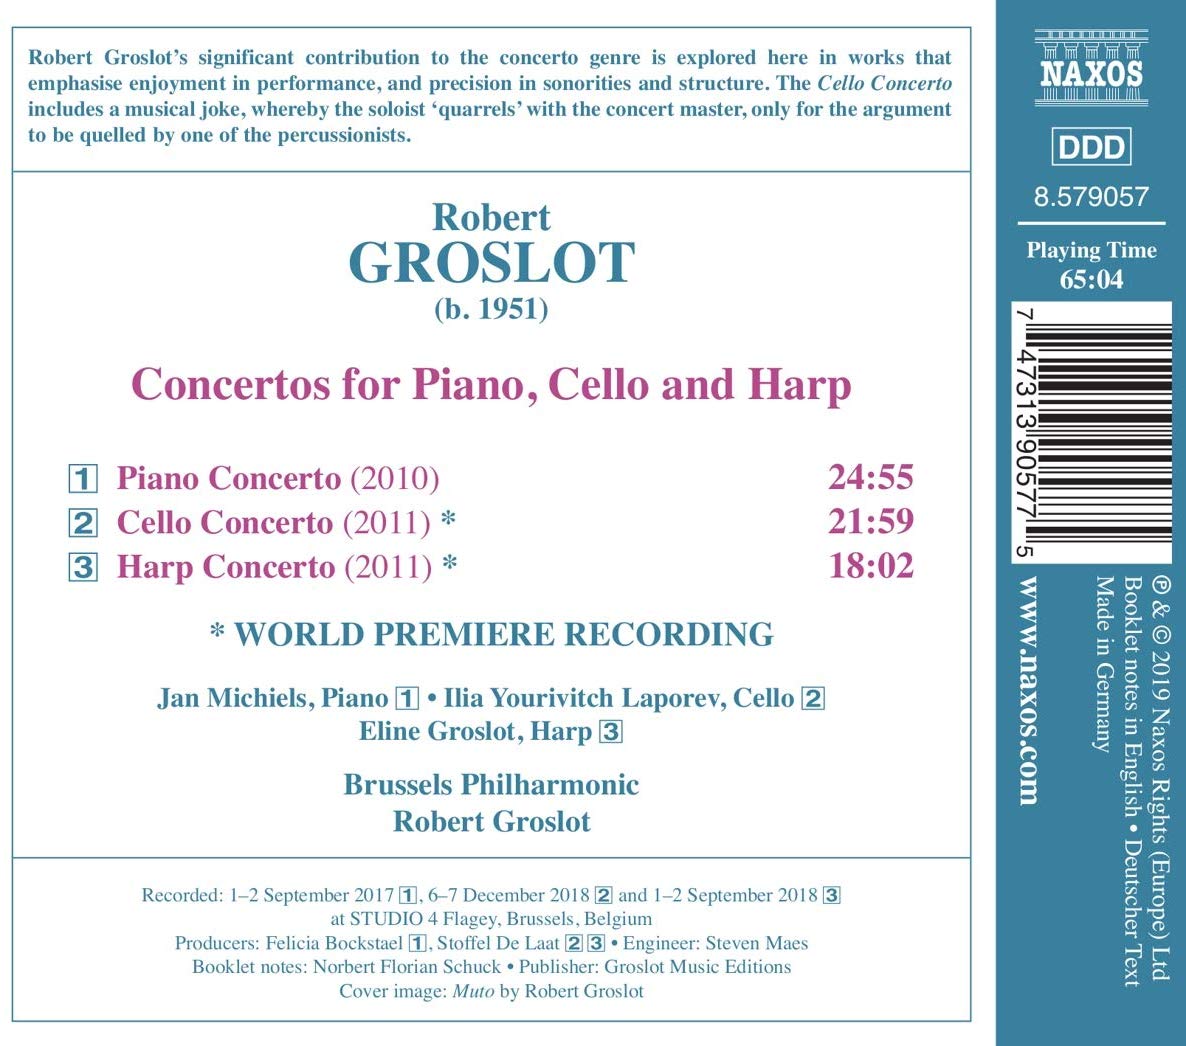 로베르 그로로: 피아노, 첼로 그리고 하프를 위한 협주곡 작품집 (Robert Groslot: Concertos for Piano, Cello and Harp)